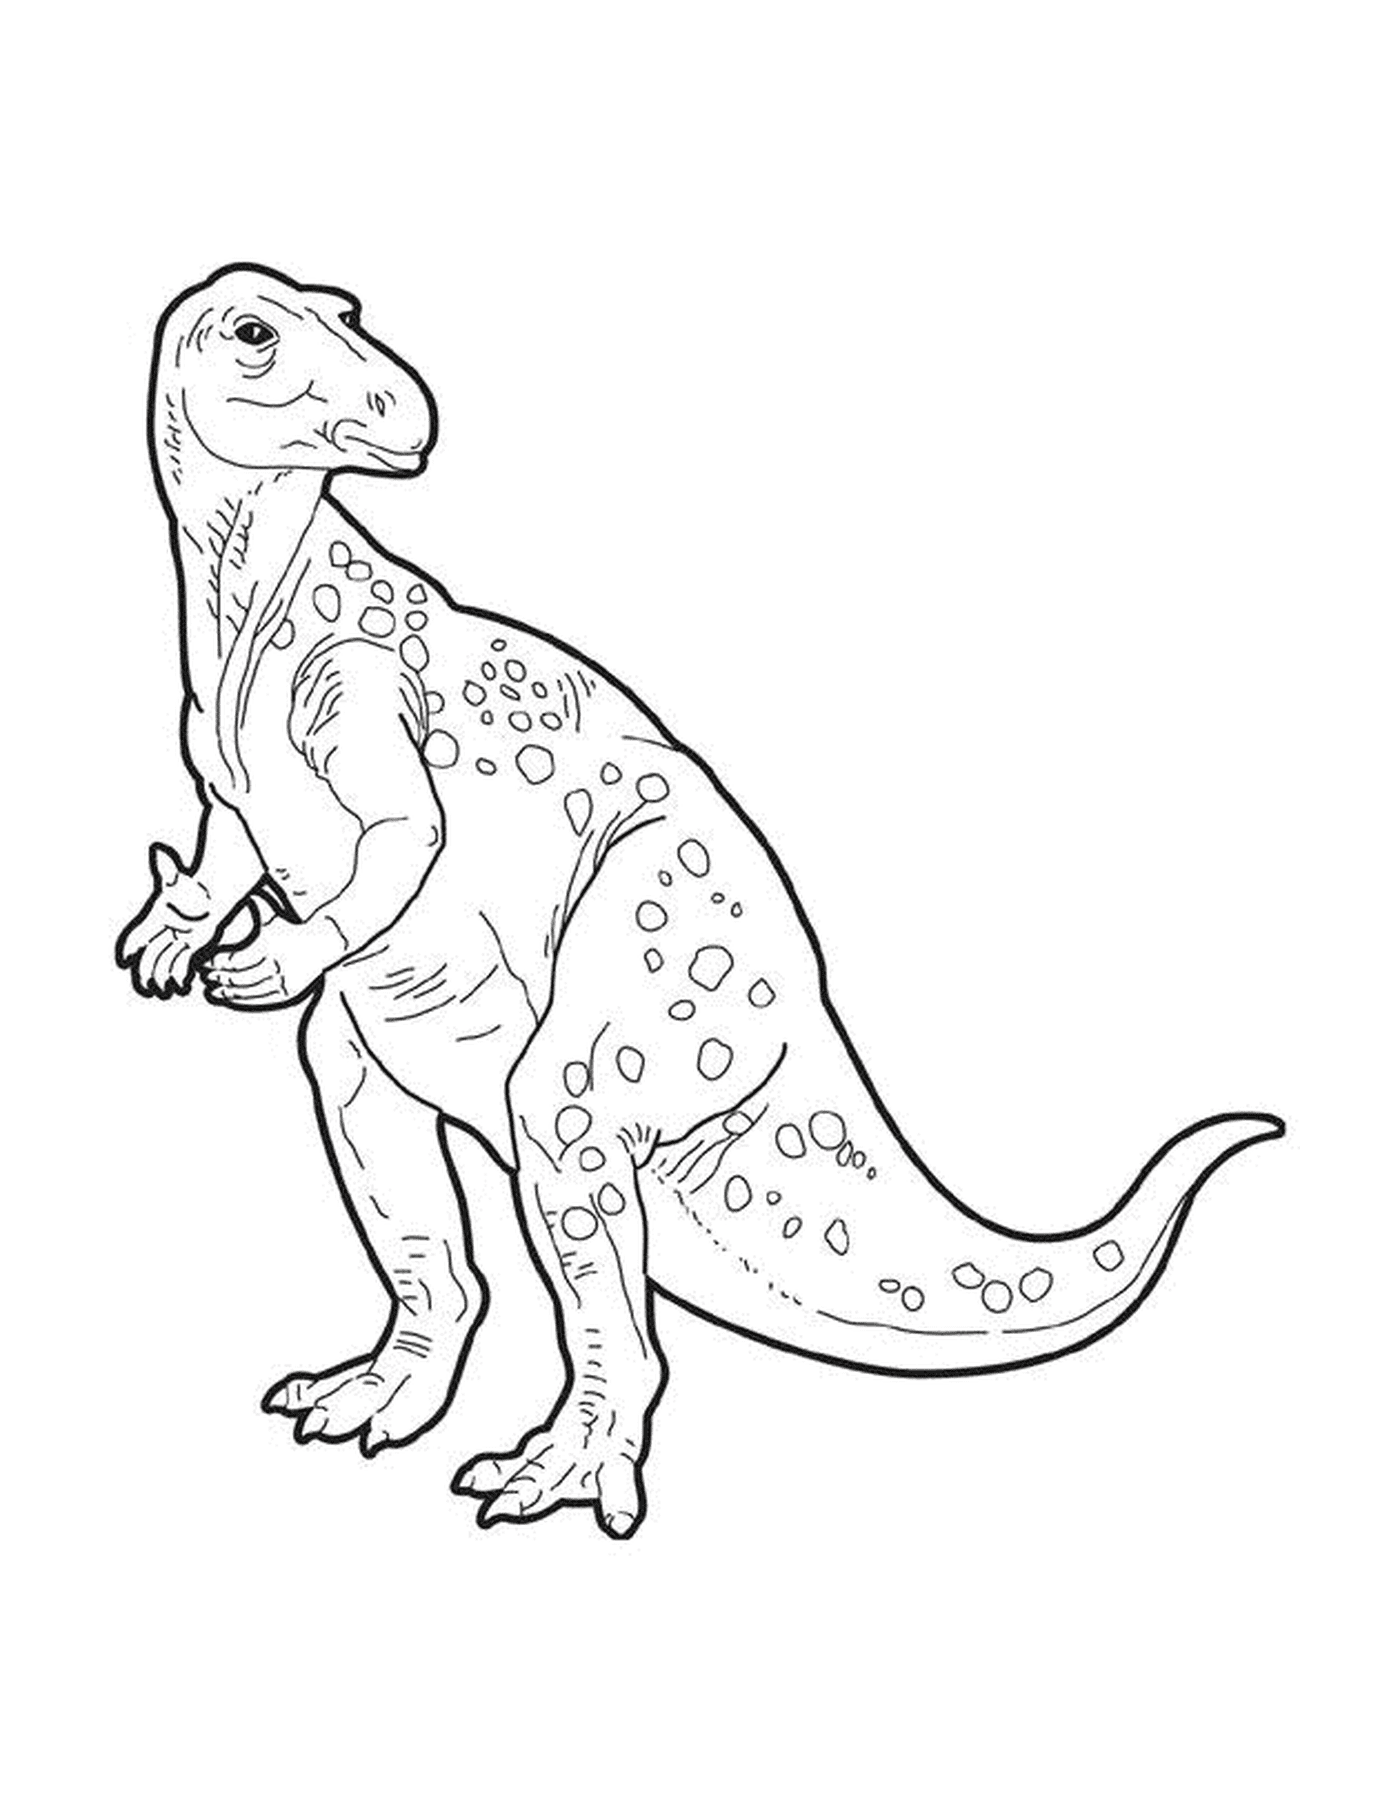  An adult t-rex 